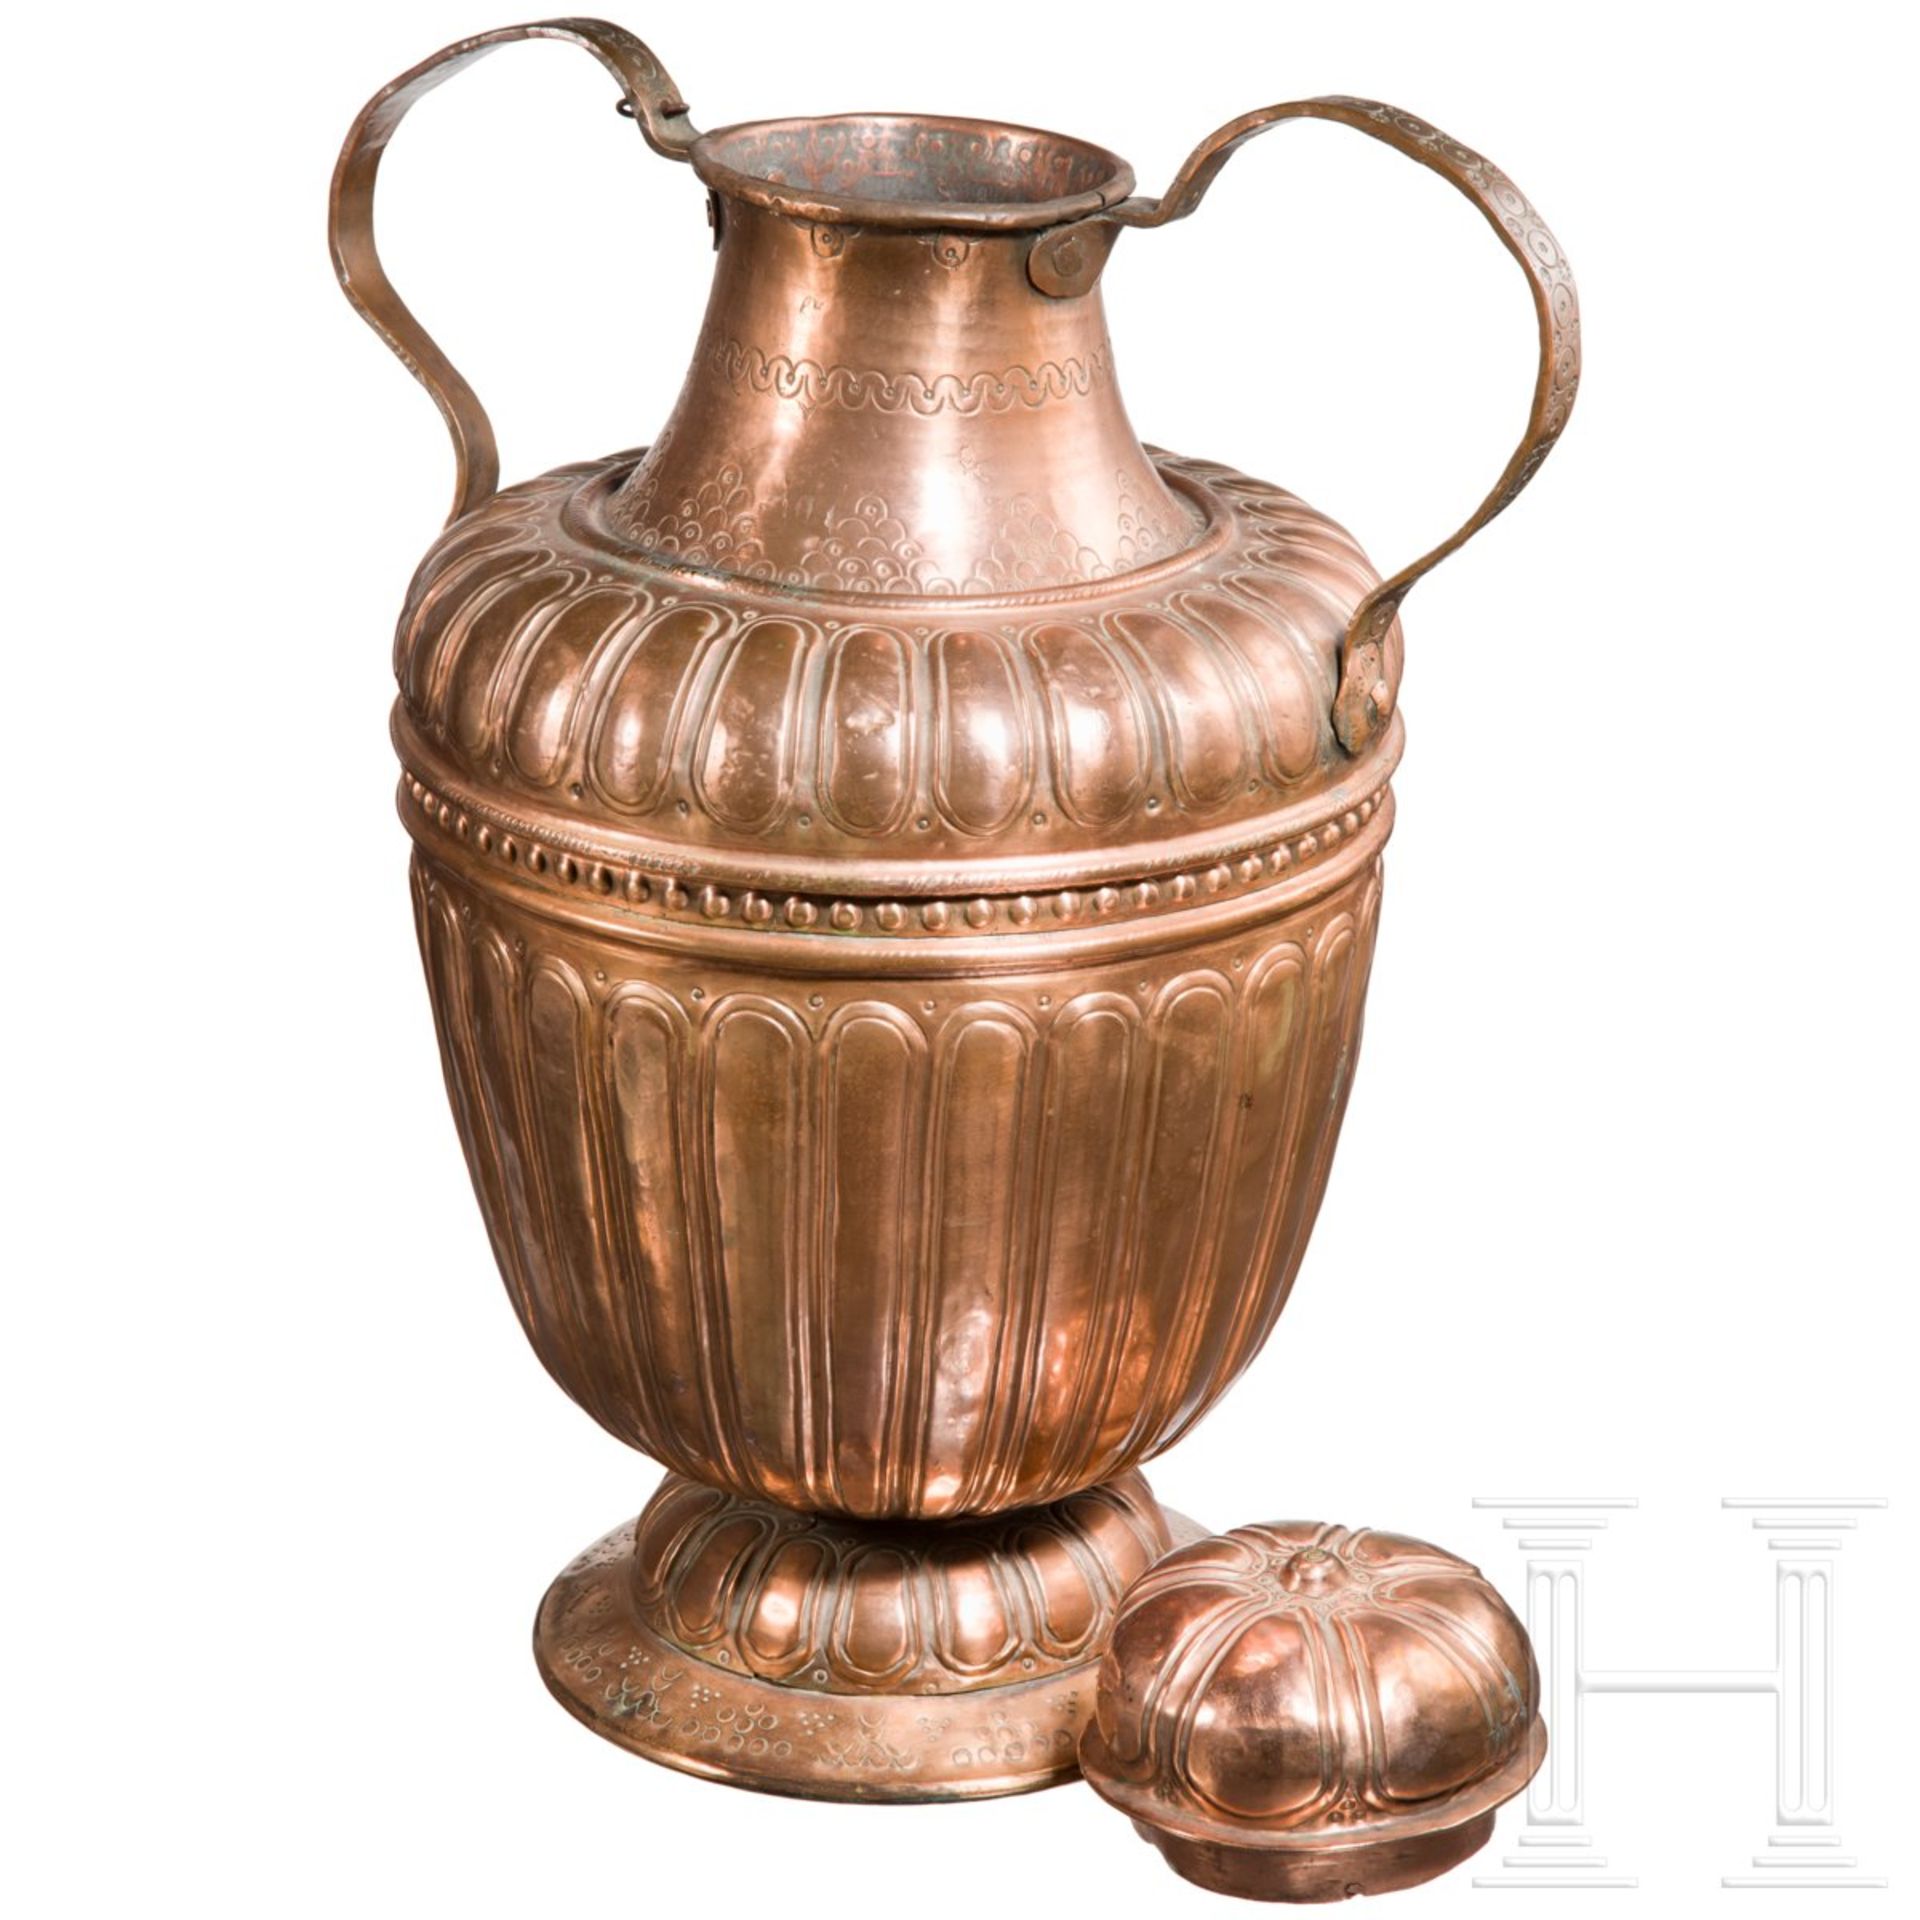 Große Wasserkanne aus Kupfer, Venetien, 17. Jhdt.Vasenförmiges Wassergefäß aus geschlagenem Kupfer - Bild 2 aus 2